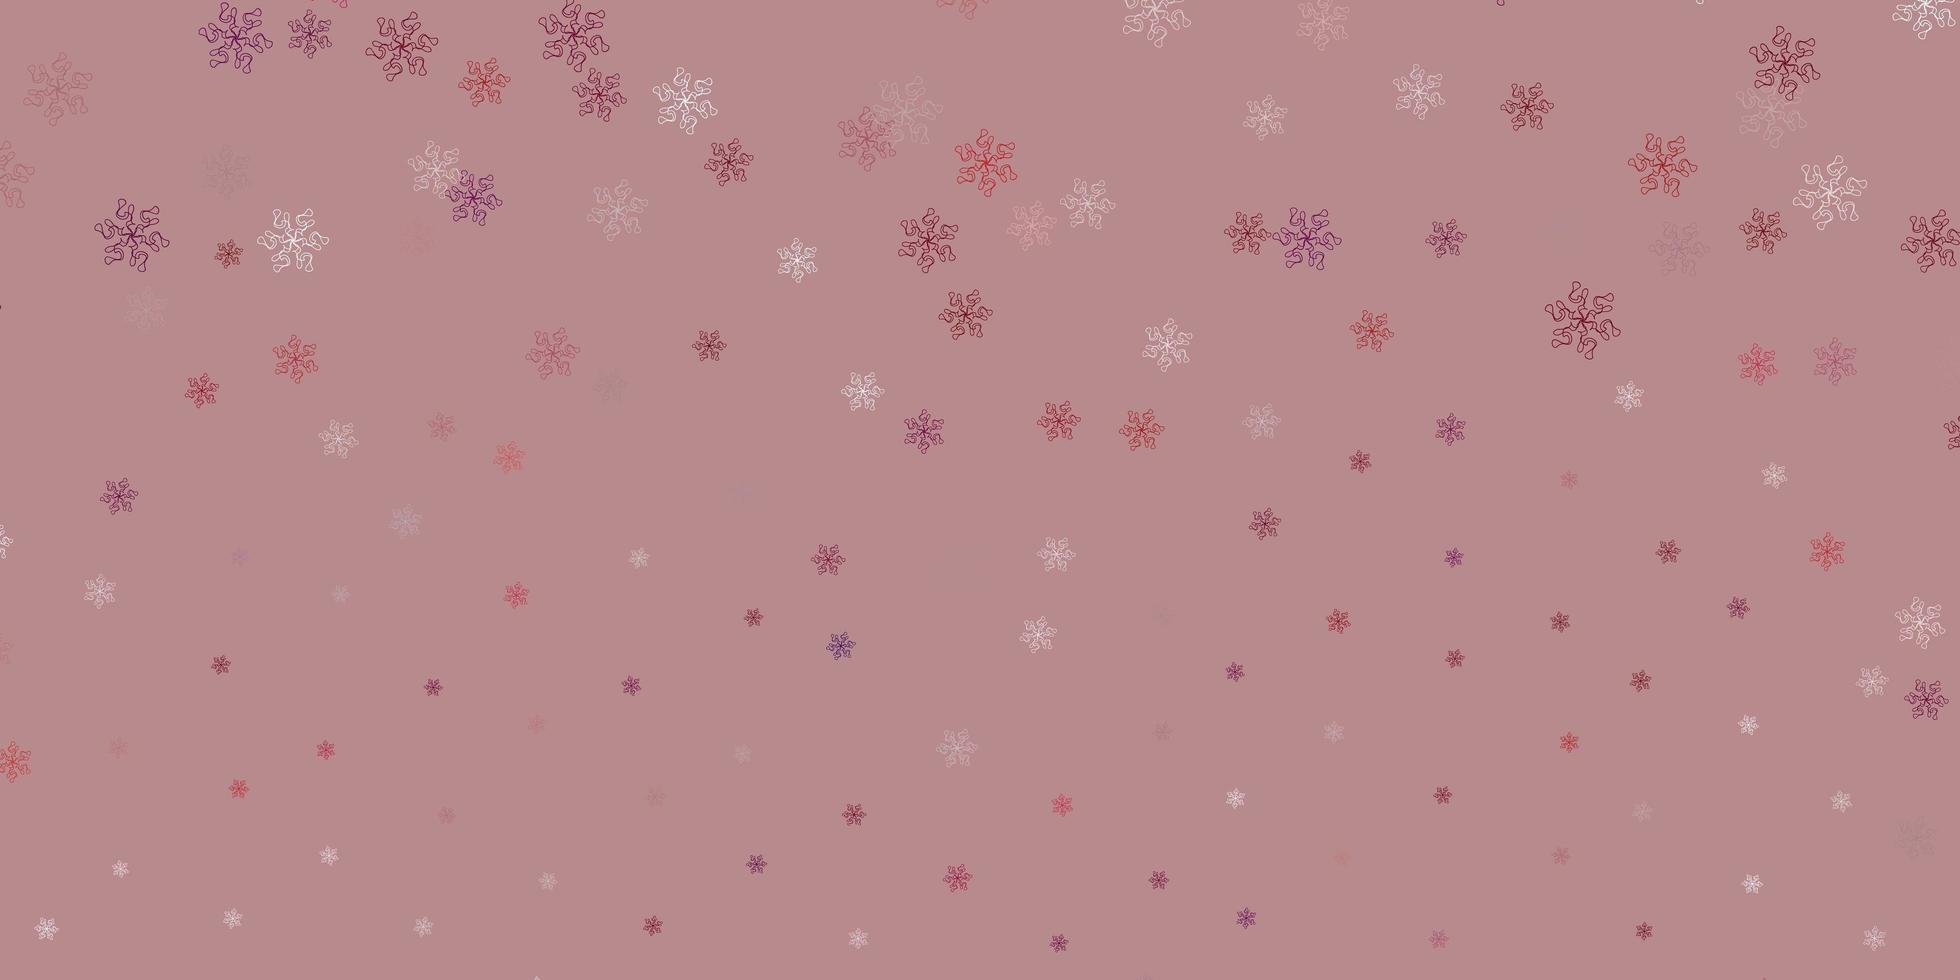 fundo do doodle do vetor roxo claro com flores.